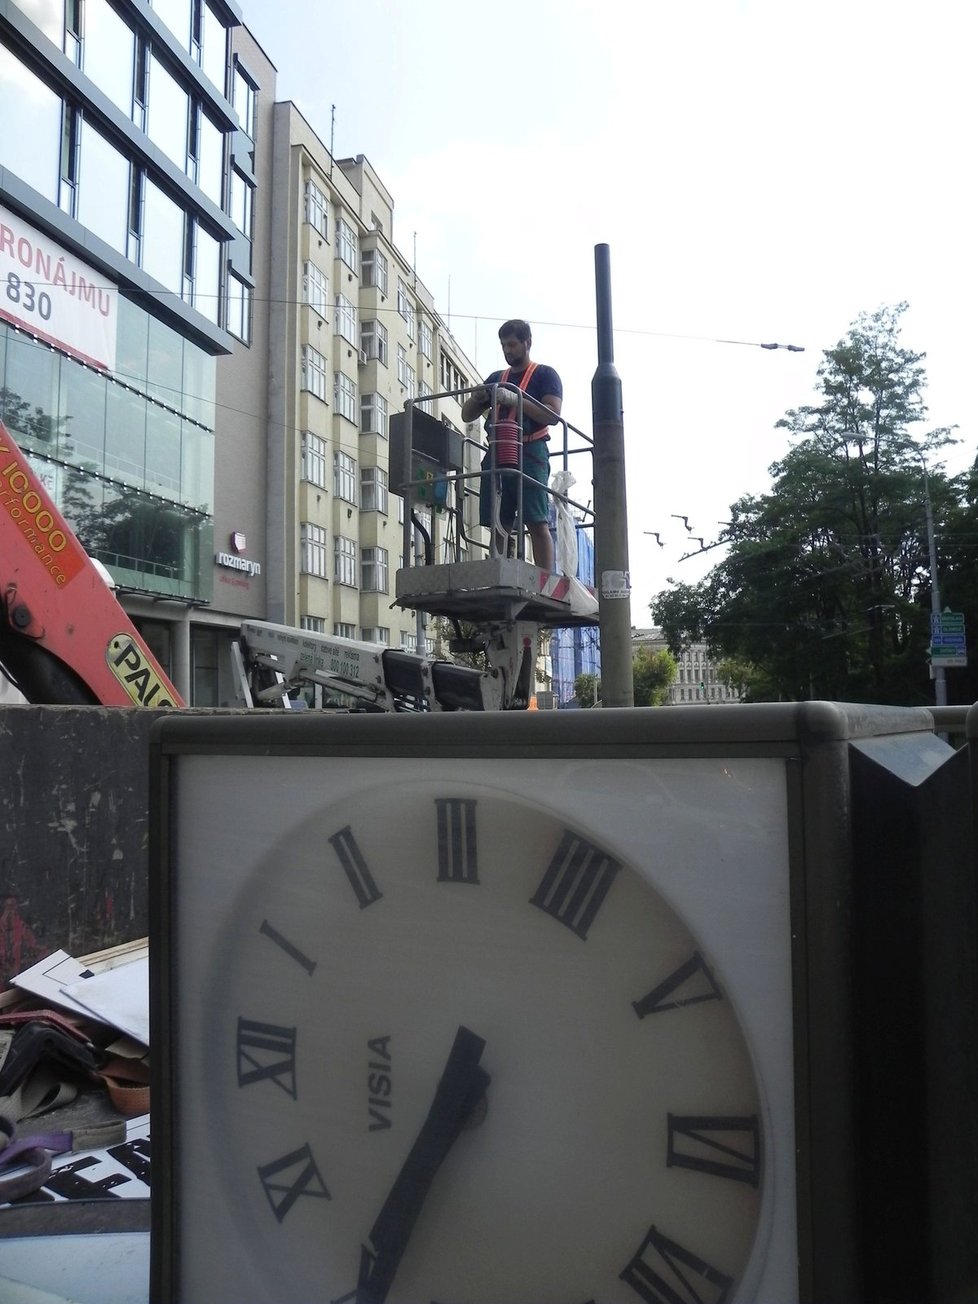 Otočné nárožní hodiny, neodmyslitelná součást Brna od 90.let, dosloužily. Od úterý 27.června je nahradí modernější verze.